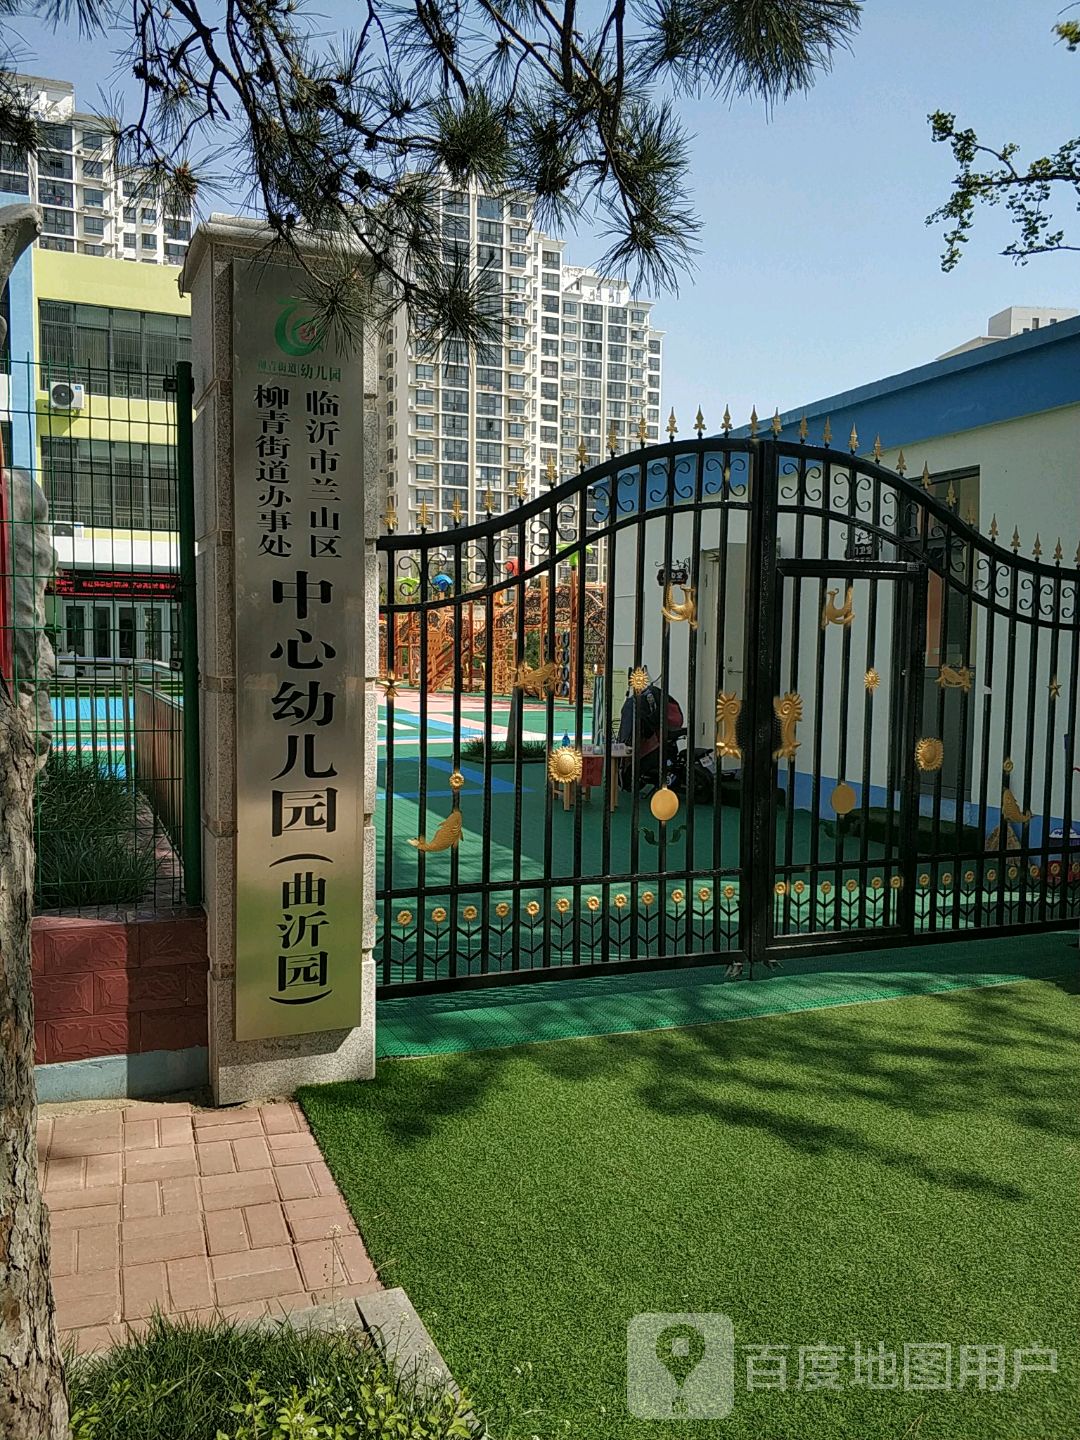 临沂市兰山区柳青街道办事处中心幼儿园(曲沂园)的图片